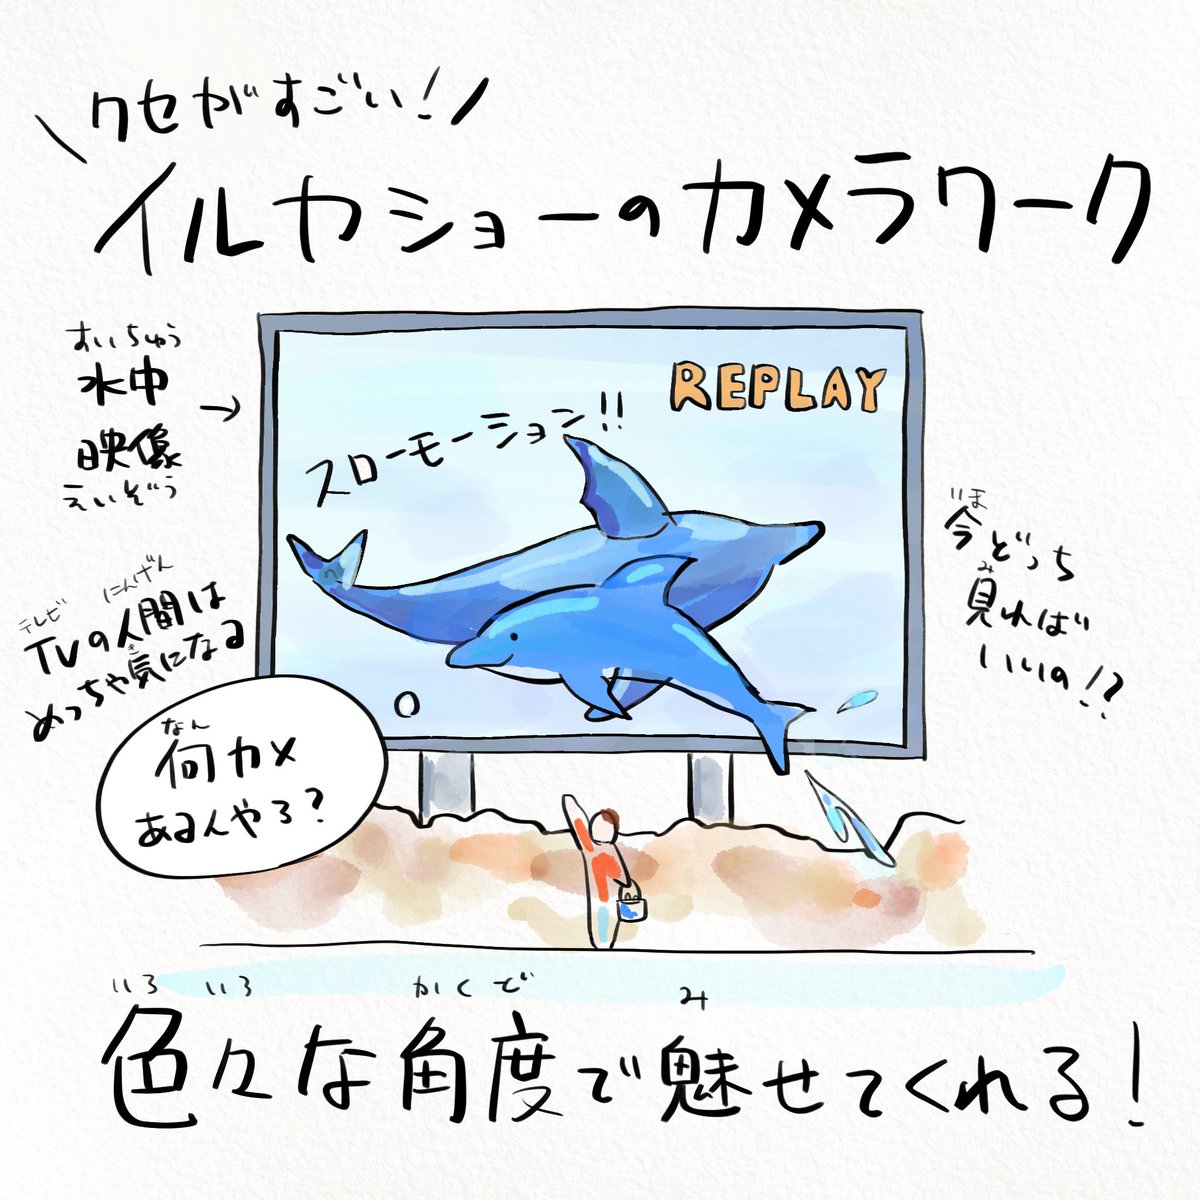 マツコの知らない世界でやってる
#名古屋港水族館 は深海ギャラリーが怖い…!! 